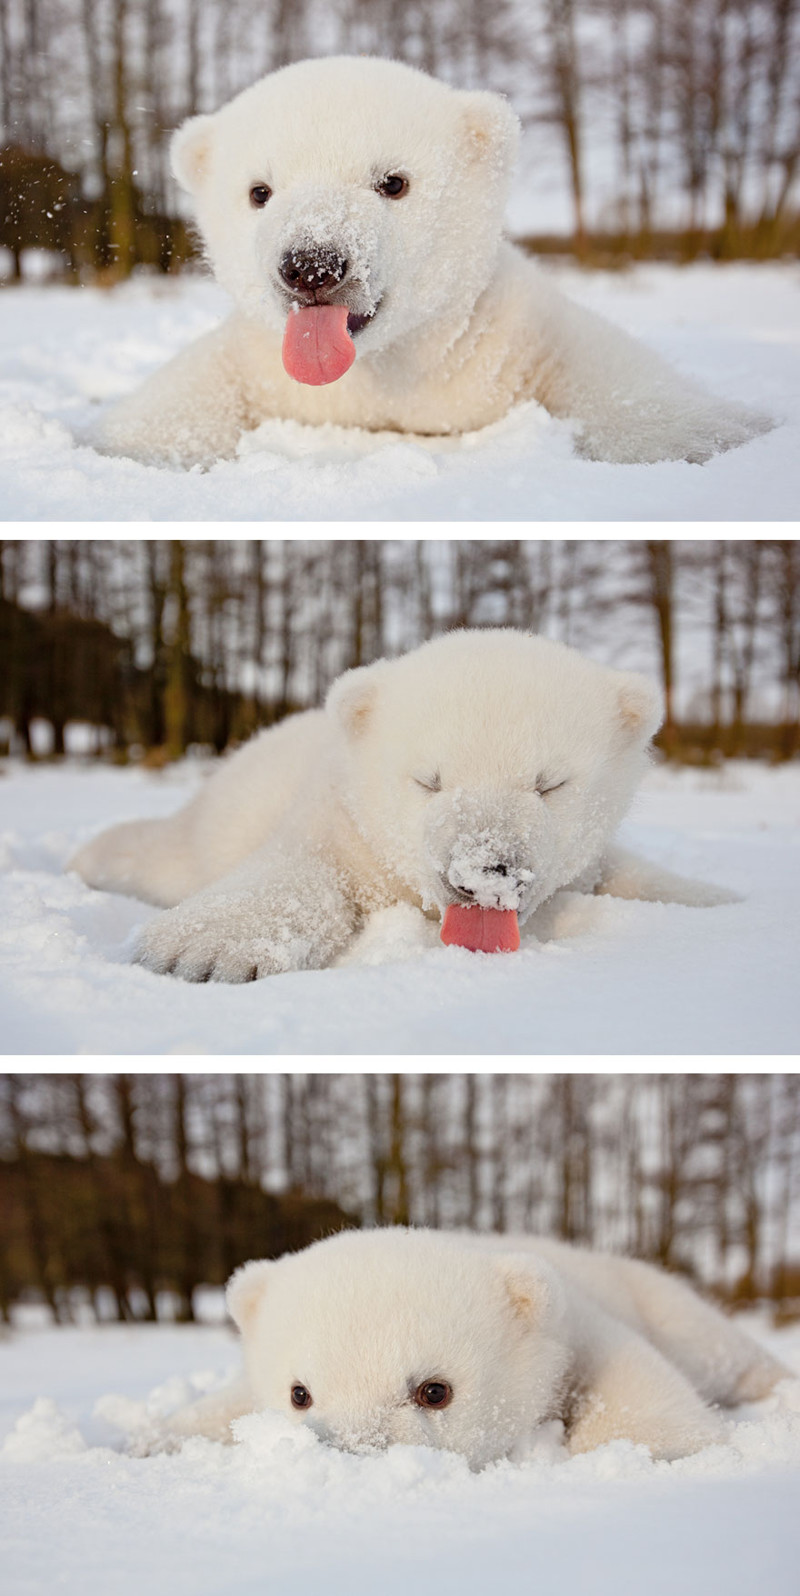 1. Медвежонок впервые видит снег